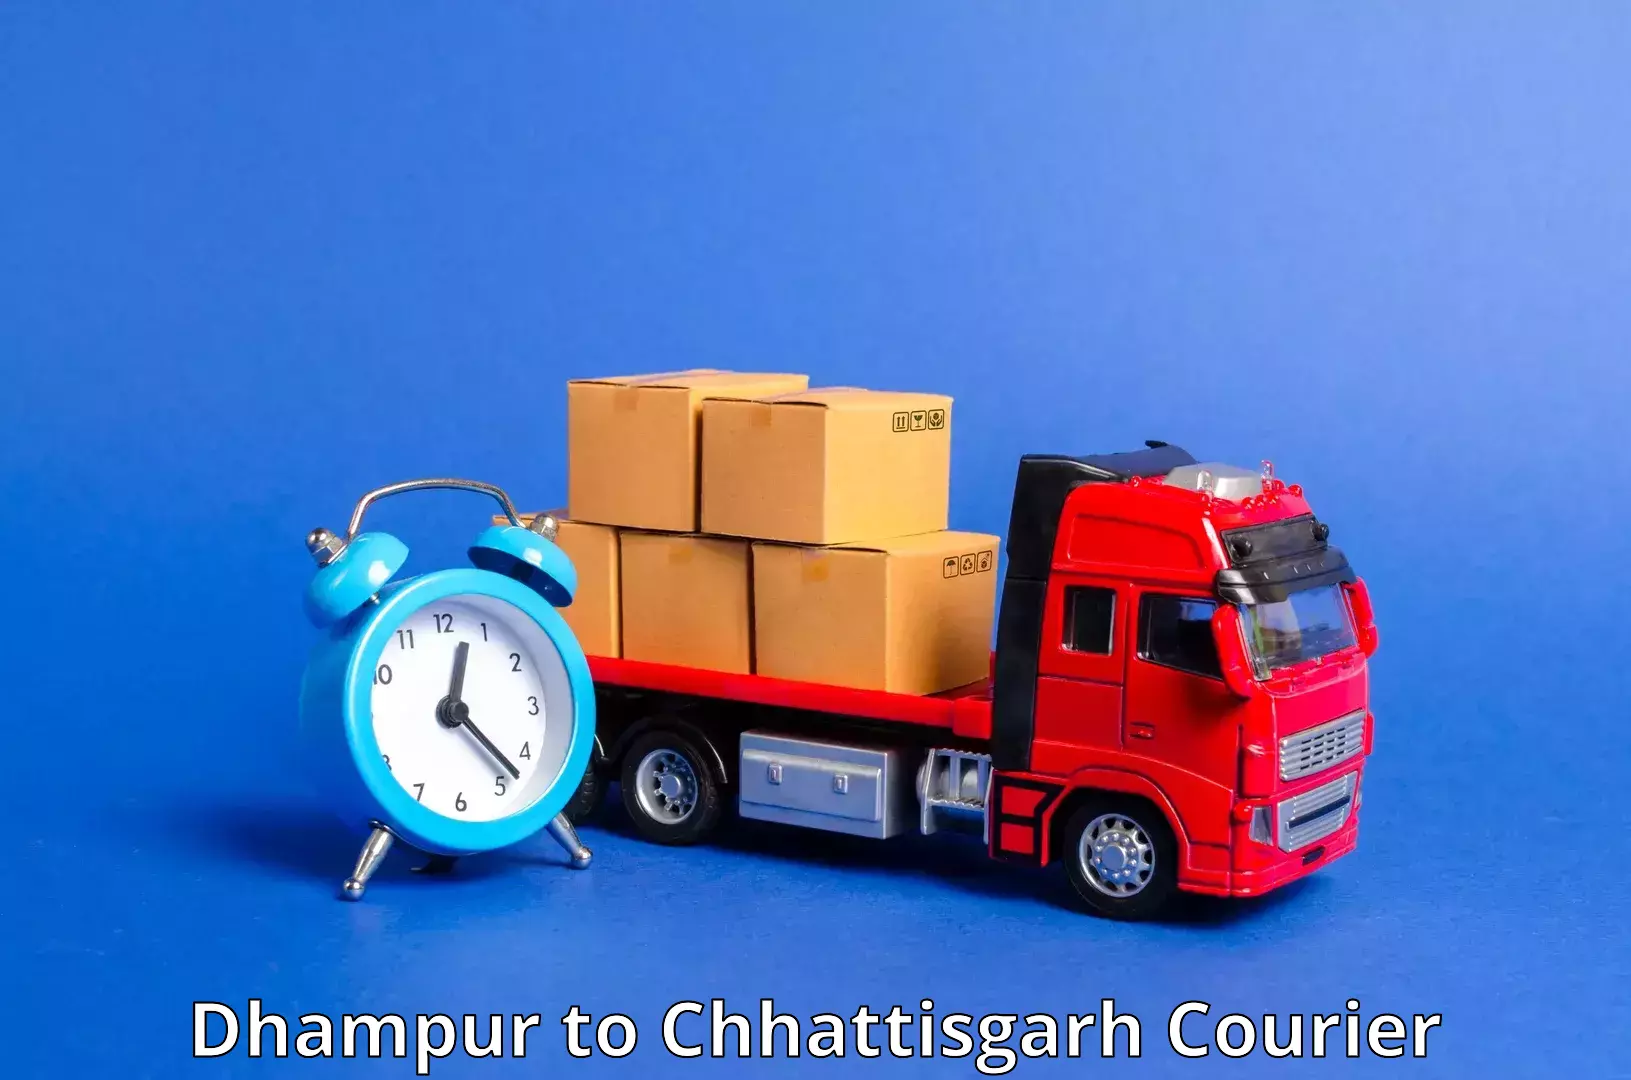 Courier service comparison Dhampur to Ratanpur